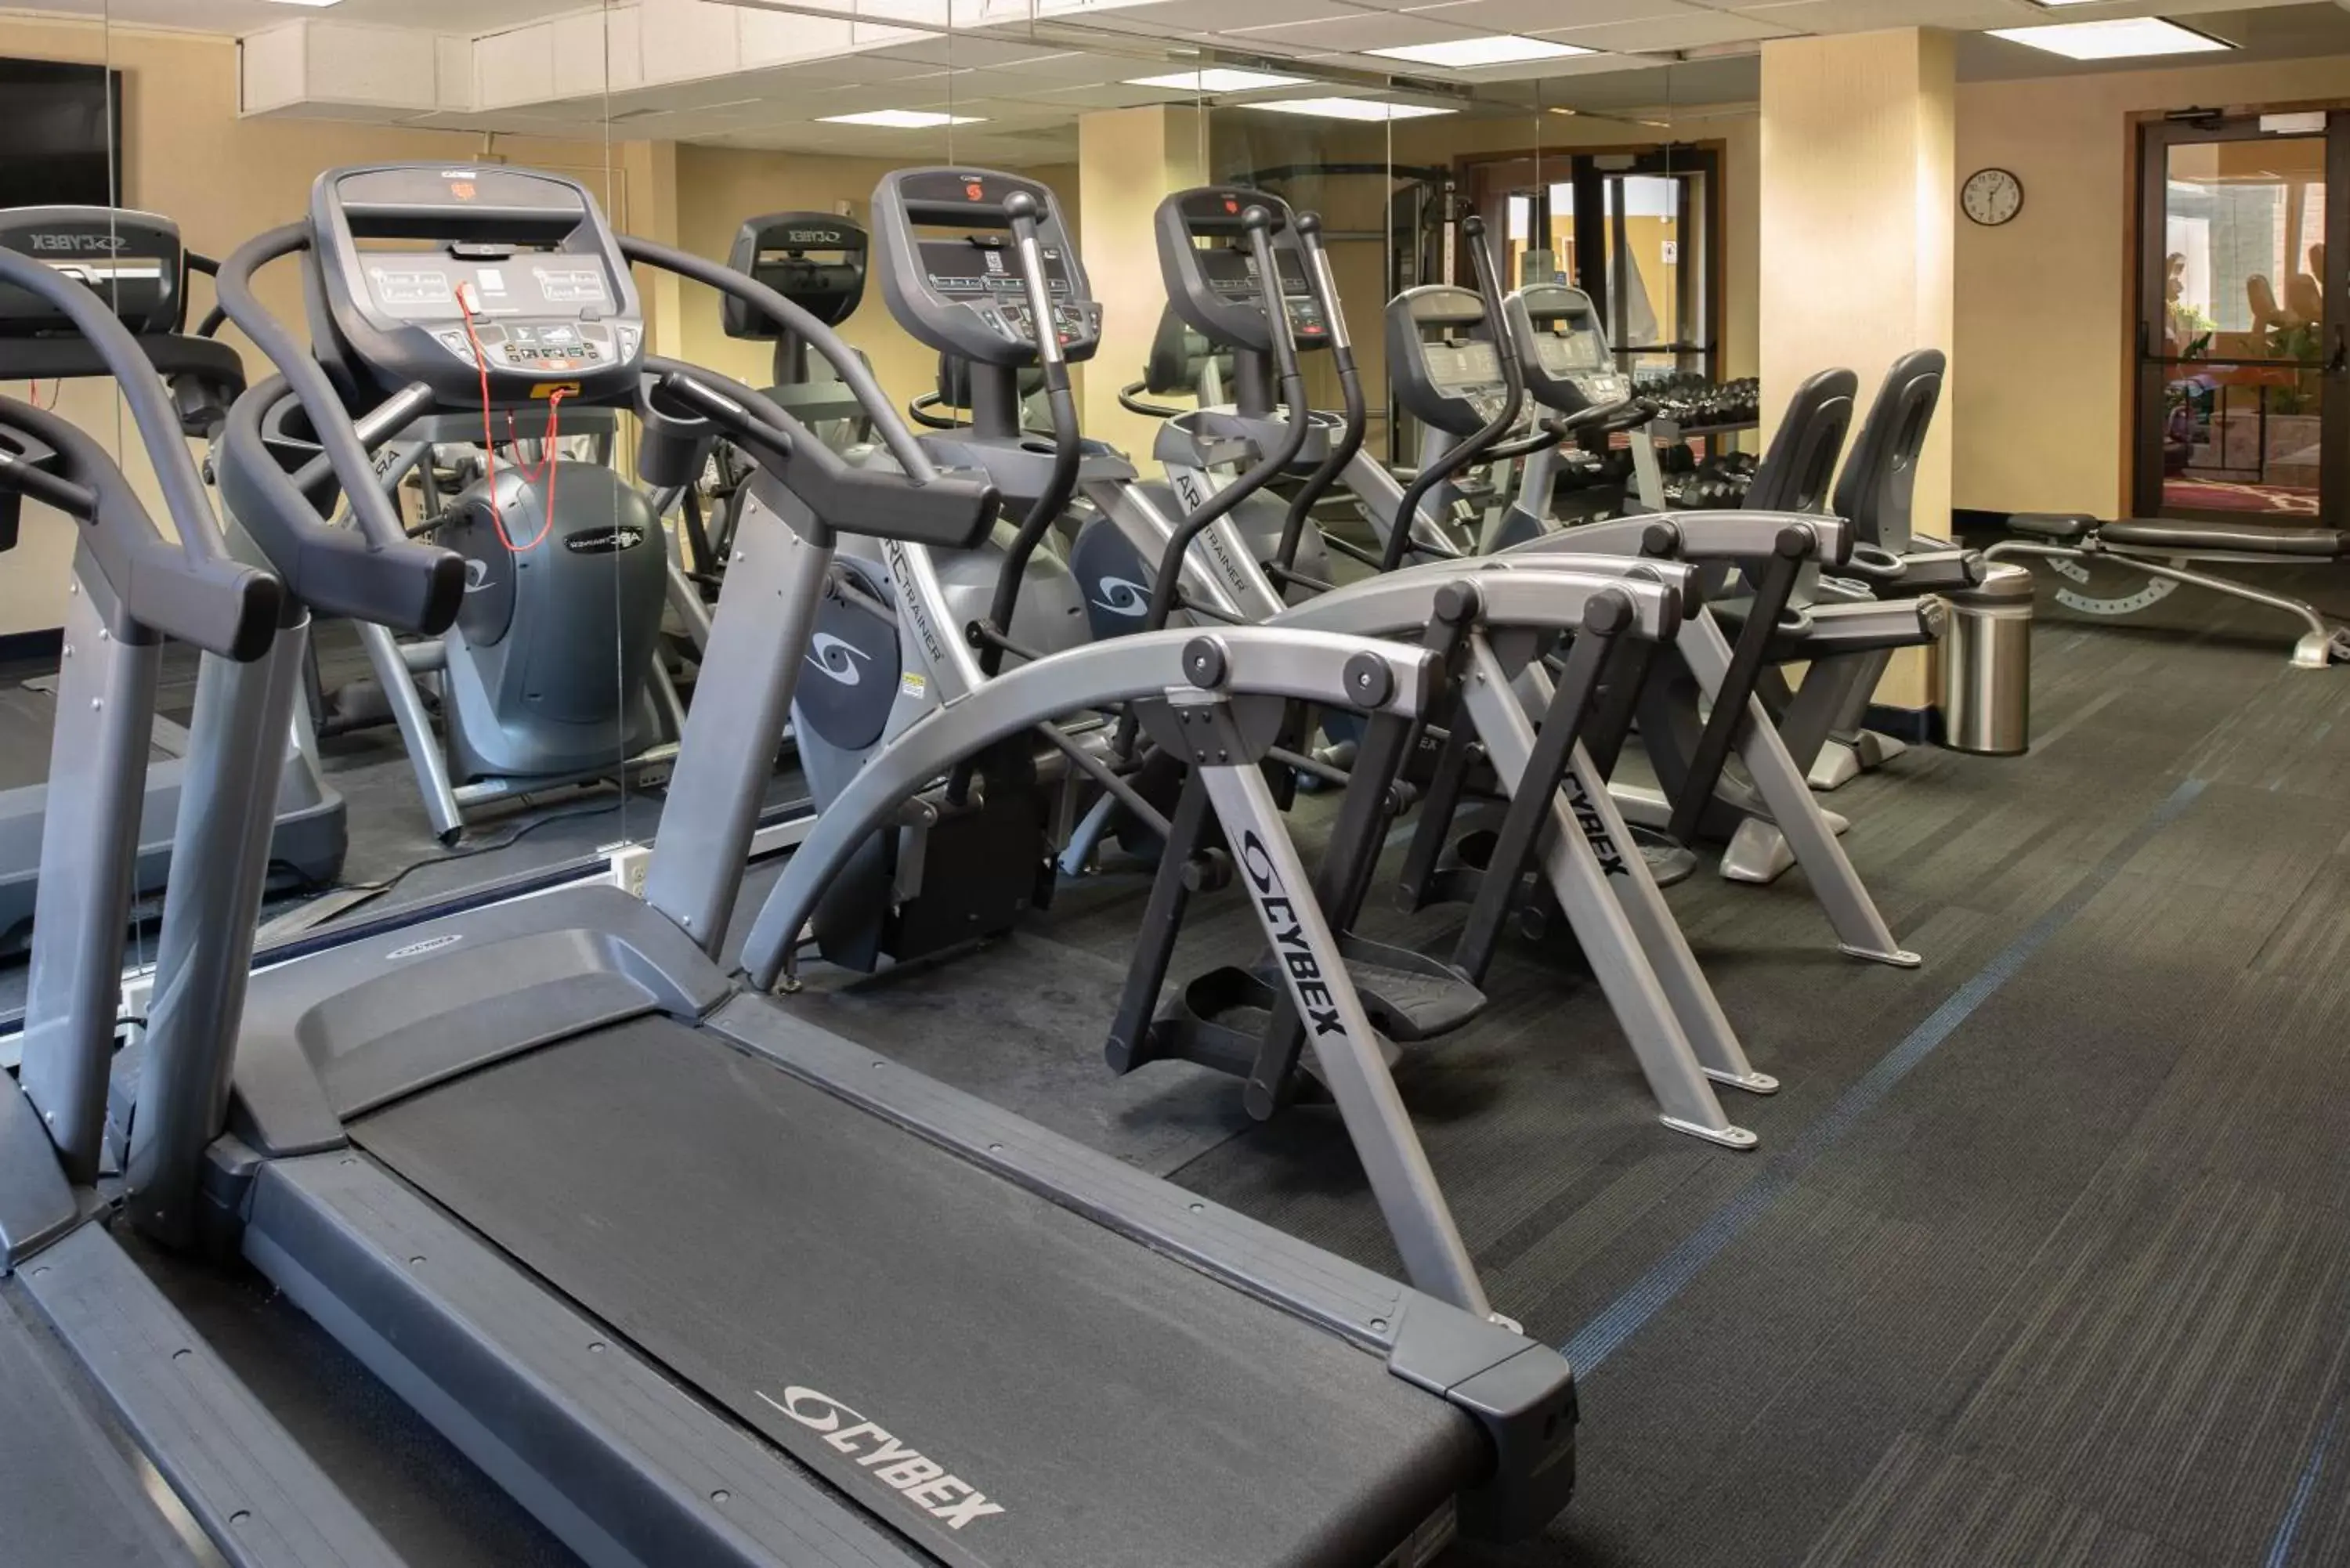 Fitness centre/facilities, Fitness Center/Facilities in MCM Elegante Hotel & Suites Lubbock